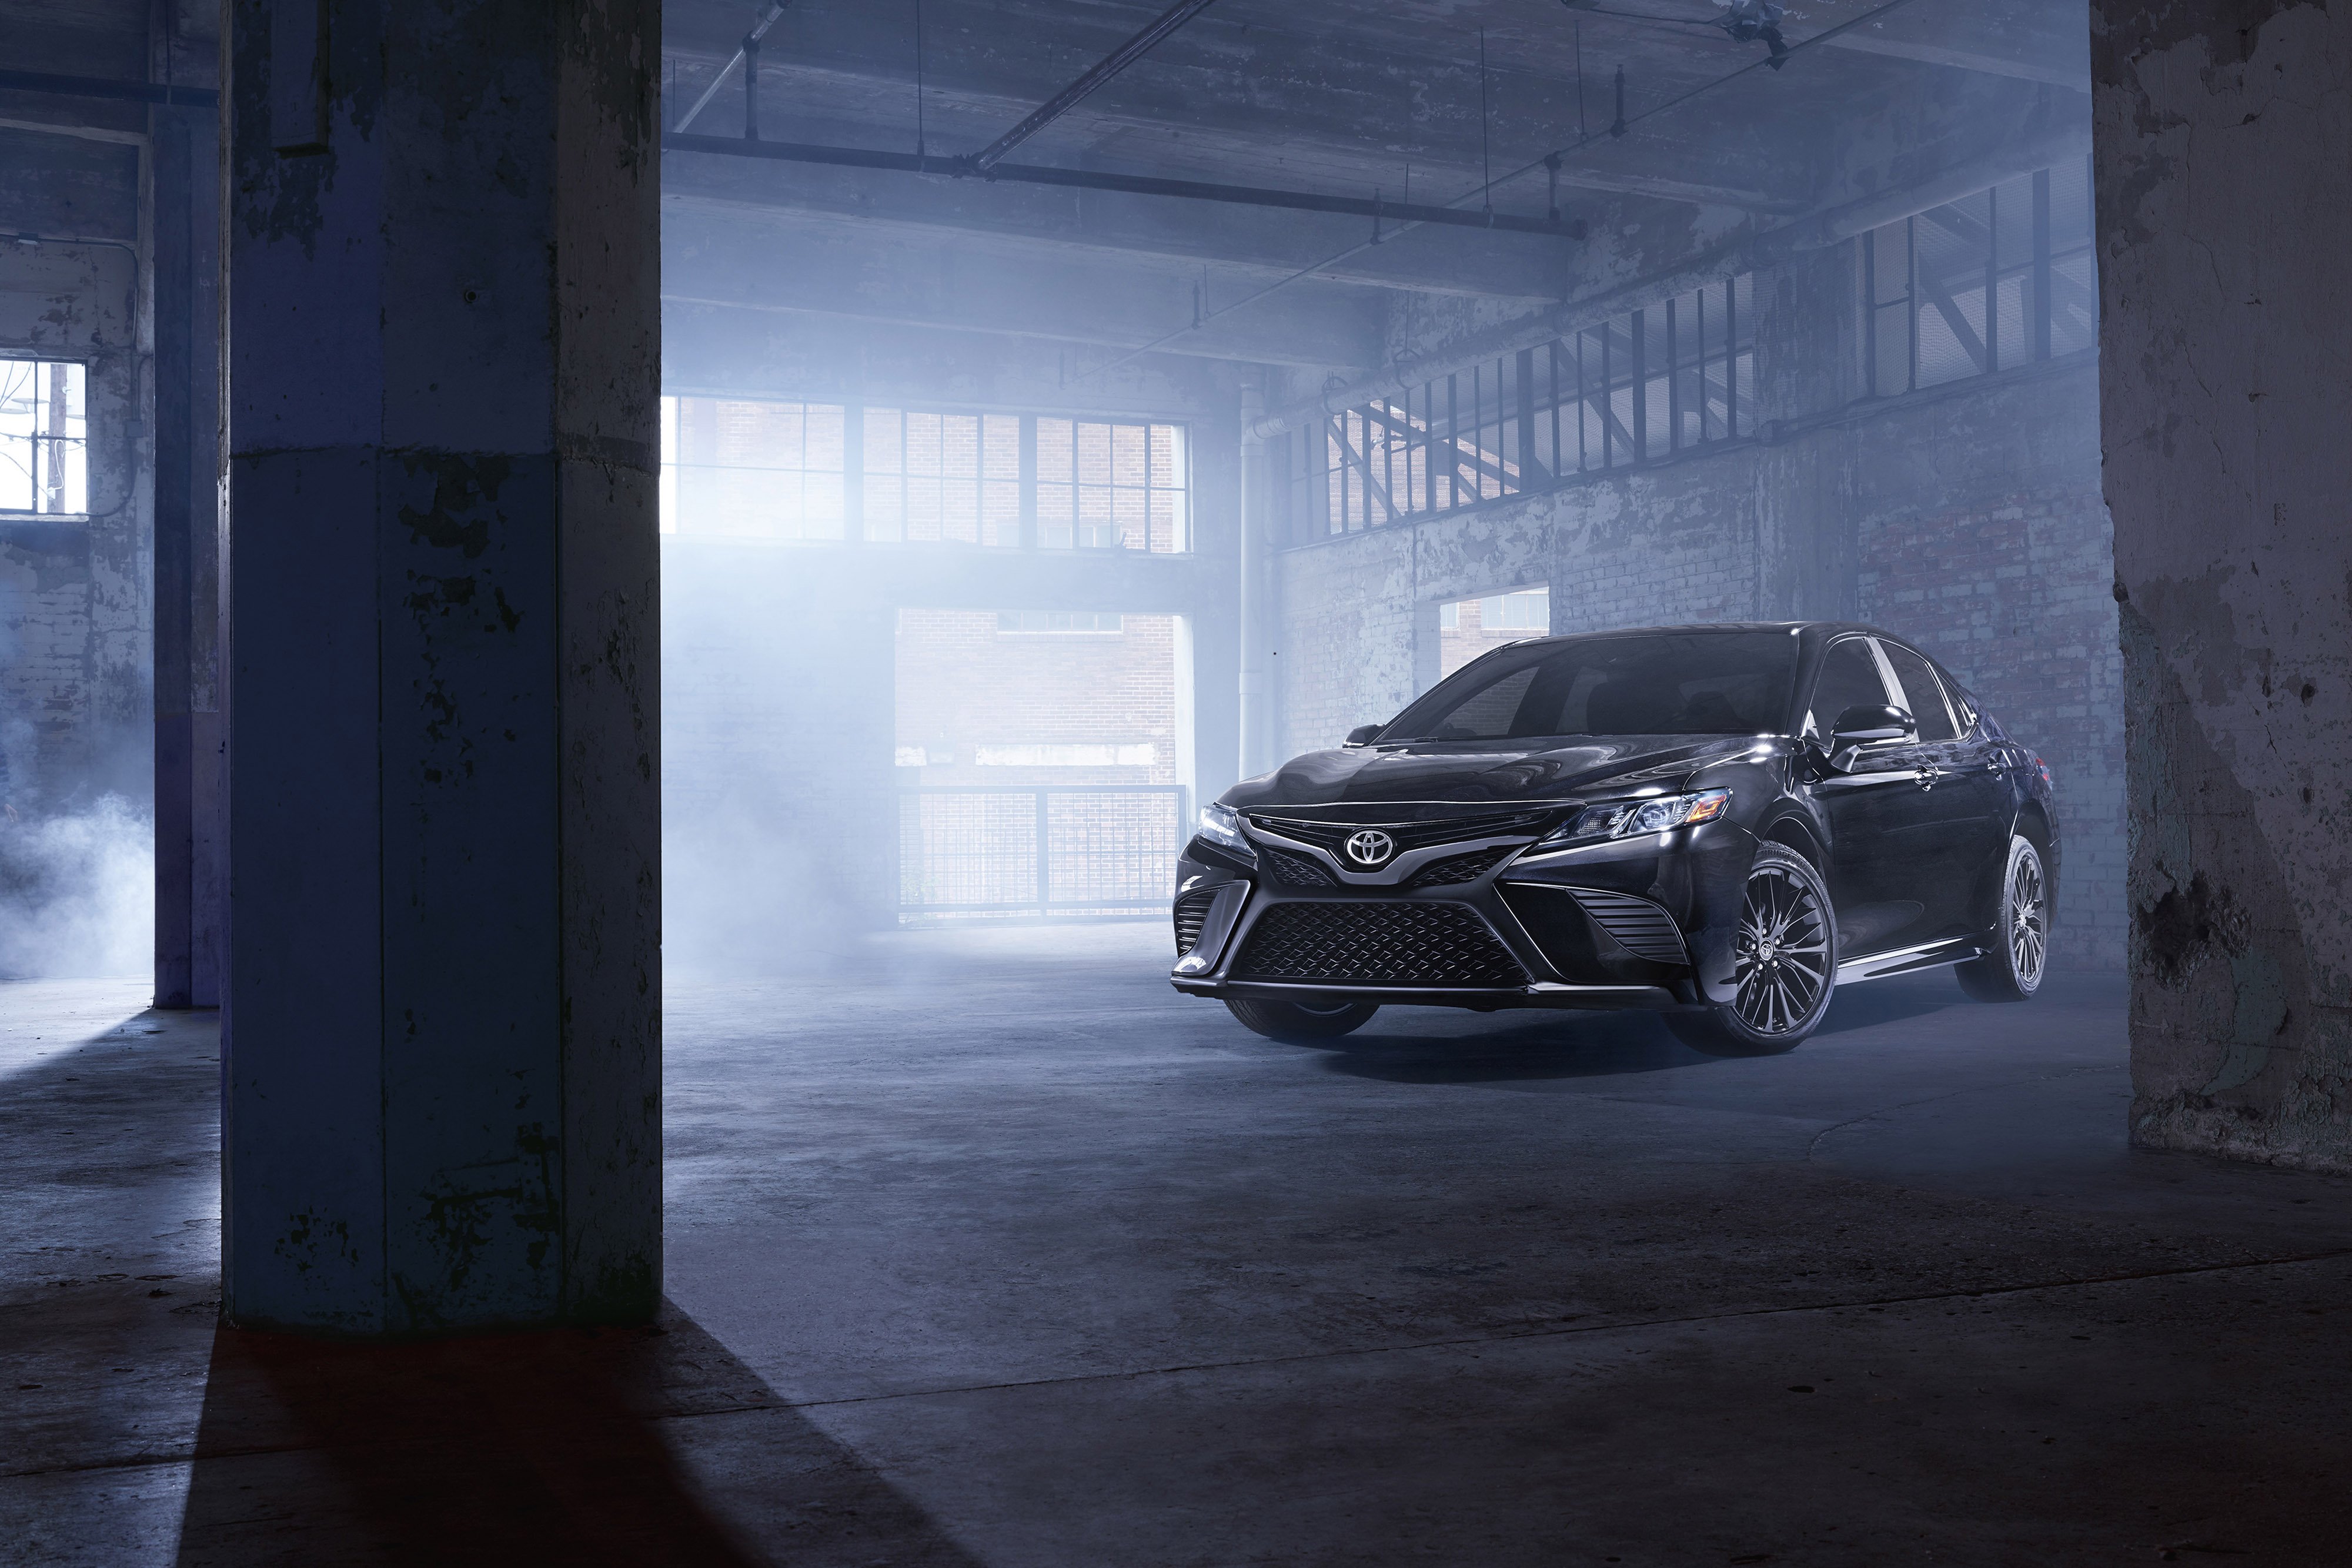 2019 Camry, уже популярен благодаря своему стильному и функциональному интерьеру, Toyota подготовила тонкие обновления до уровня отделки SE, который поставляется с черными 18-дюймовыми колесами и черным спойлером, которые являются изюминкой пакета. Д